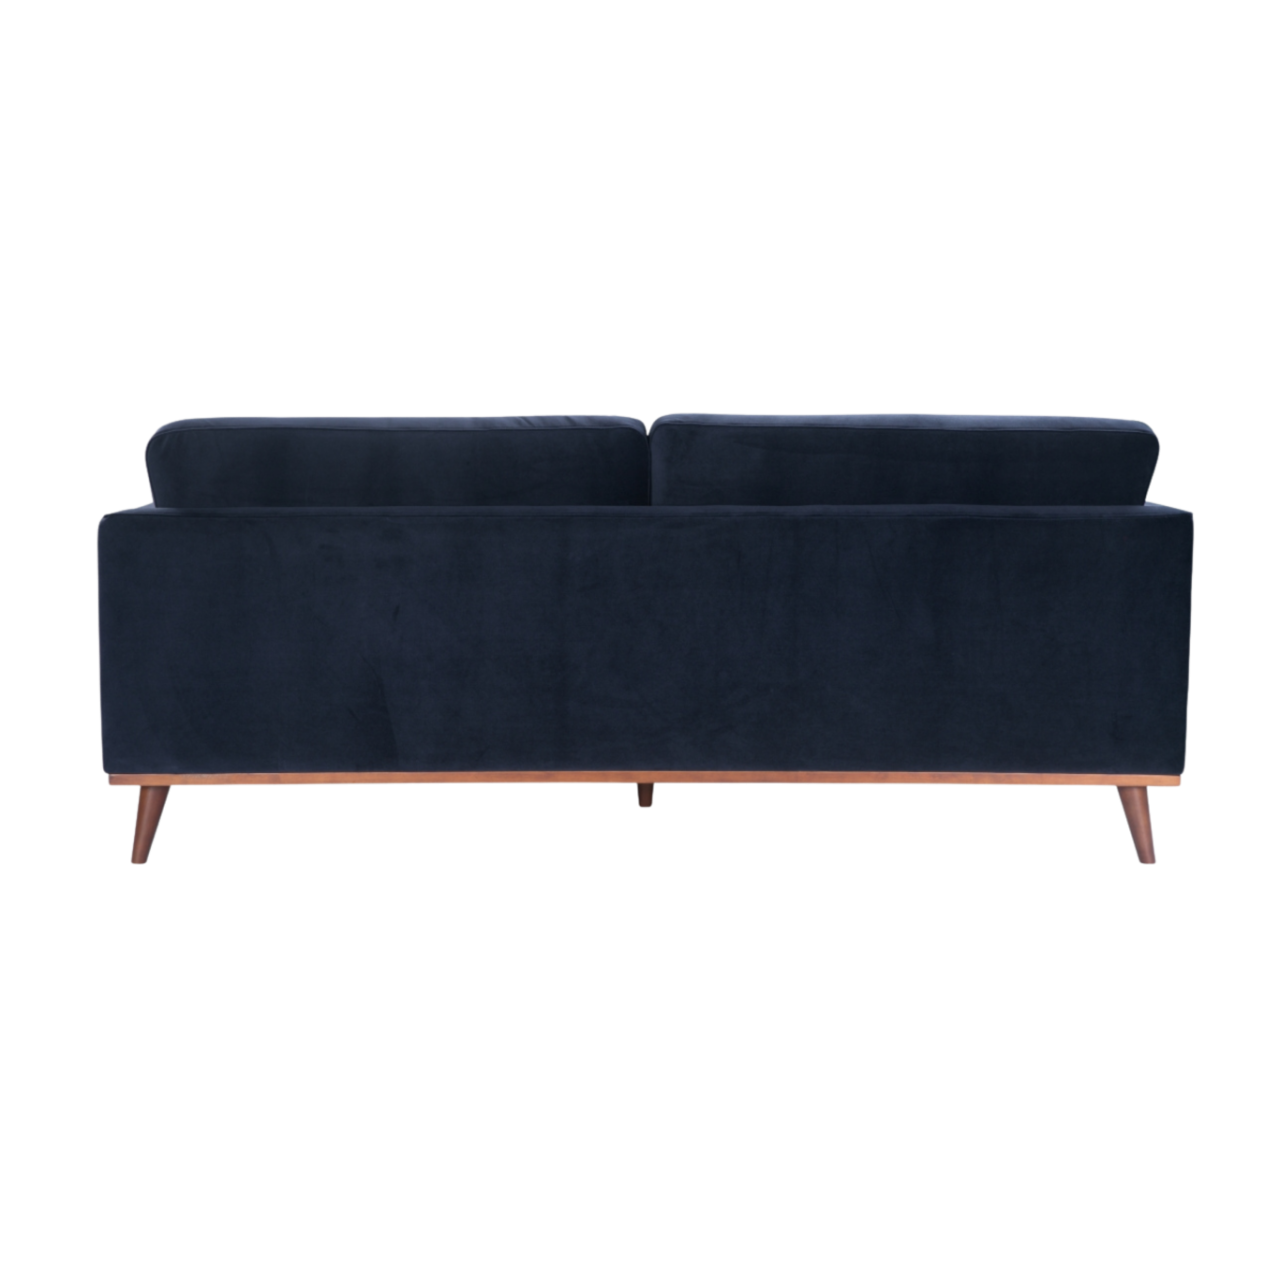 simple modern 3 seater sofa in midnight blue velvet